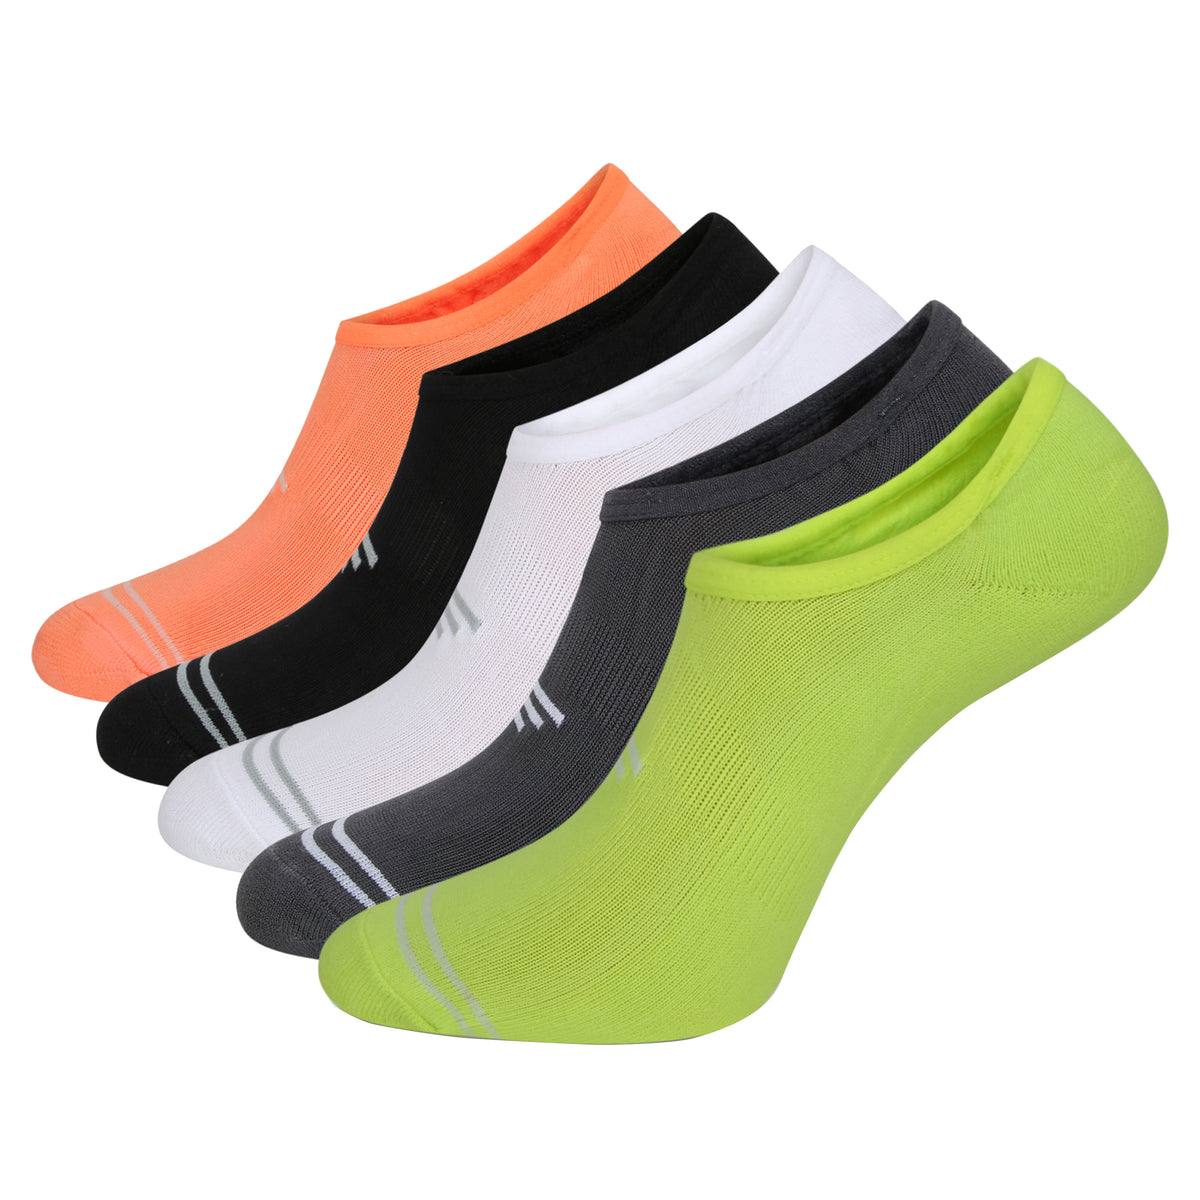 Techni Footsie Socks Assorted 5 Pack